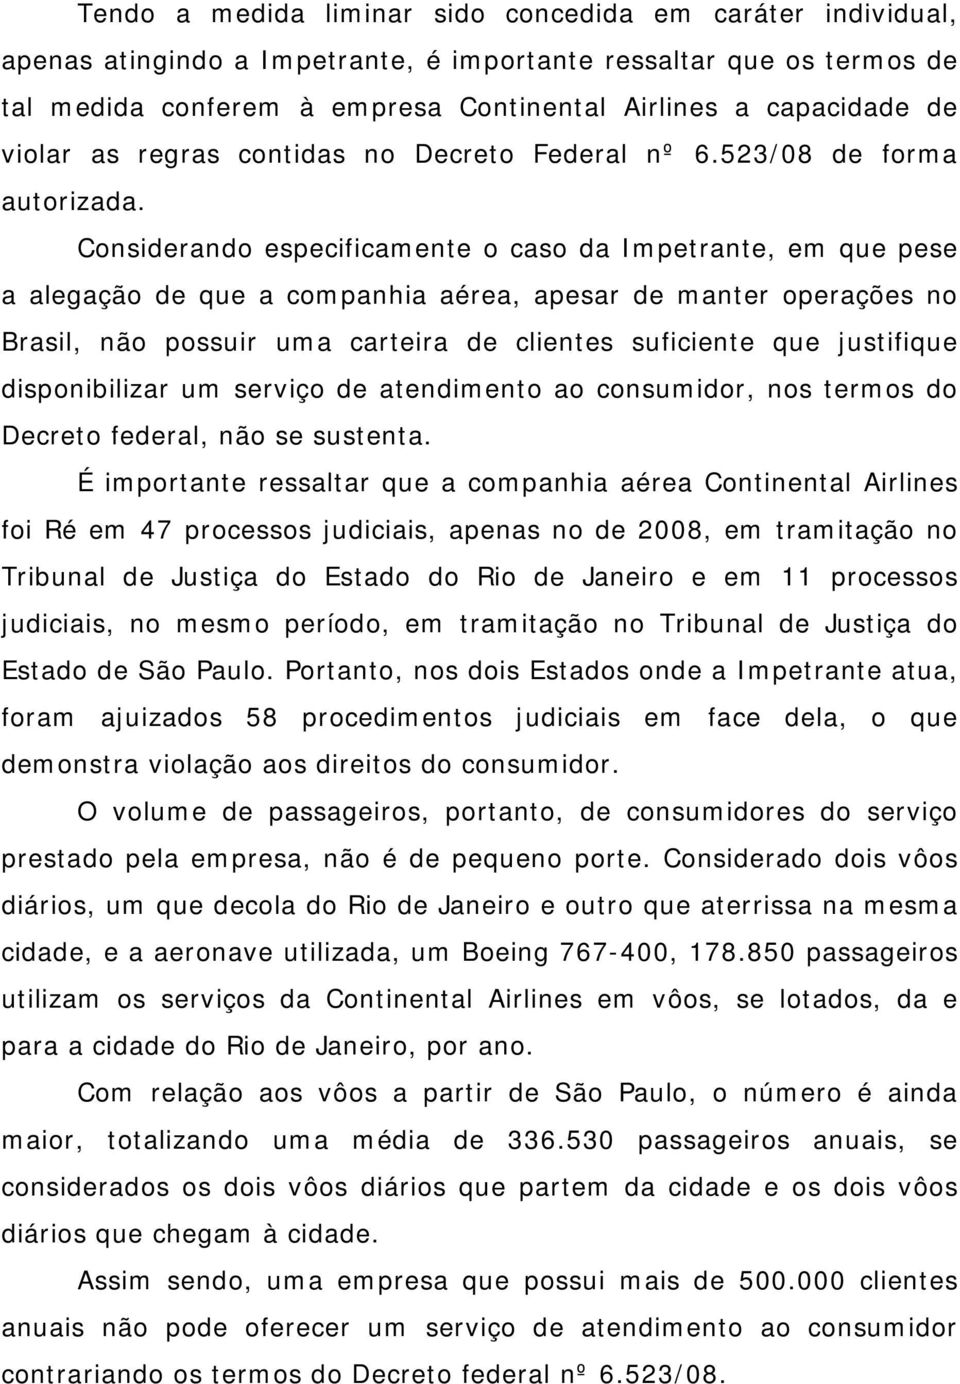 Considerando especificamente o caso da Impetrante, em que pese a alegação de que a companhia aérea, apesar de manter operações no Brasil, não possuir uma carteira de clientes suficiente que